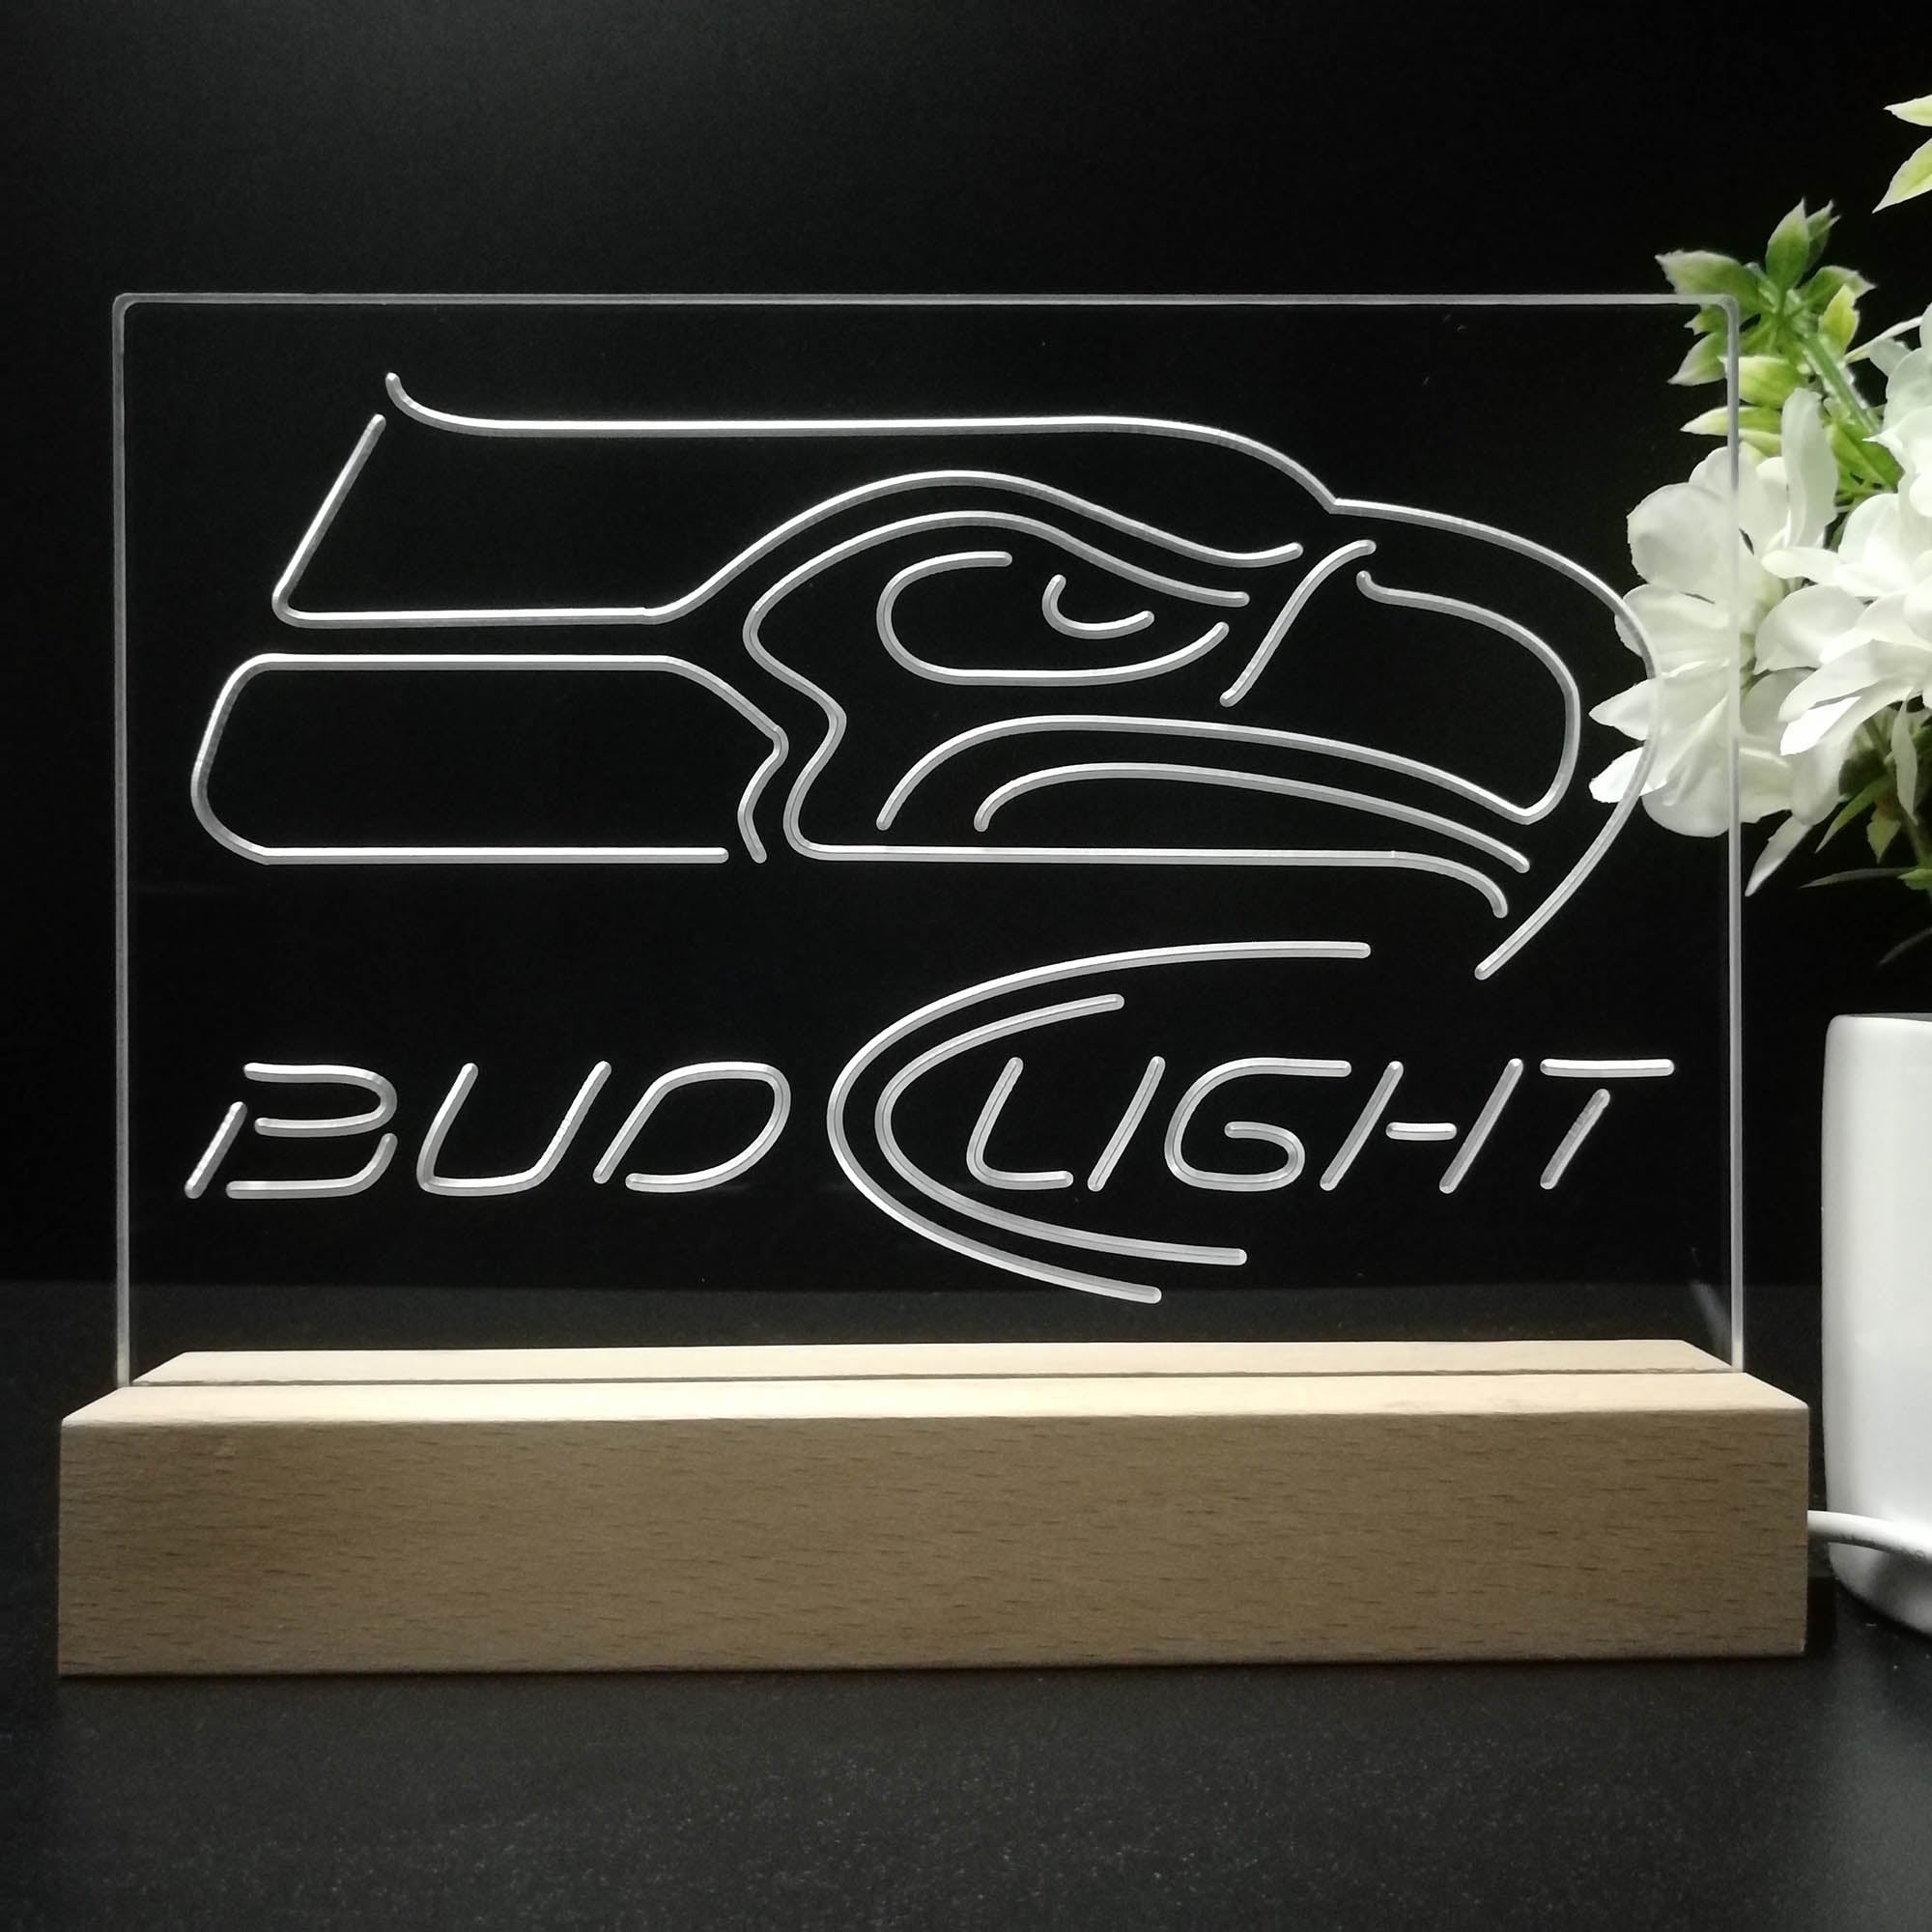 Bud Light Seattle Seahawks Sport Team Night Light 3D Illusion Lamp